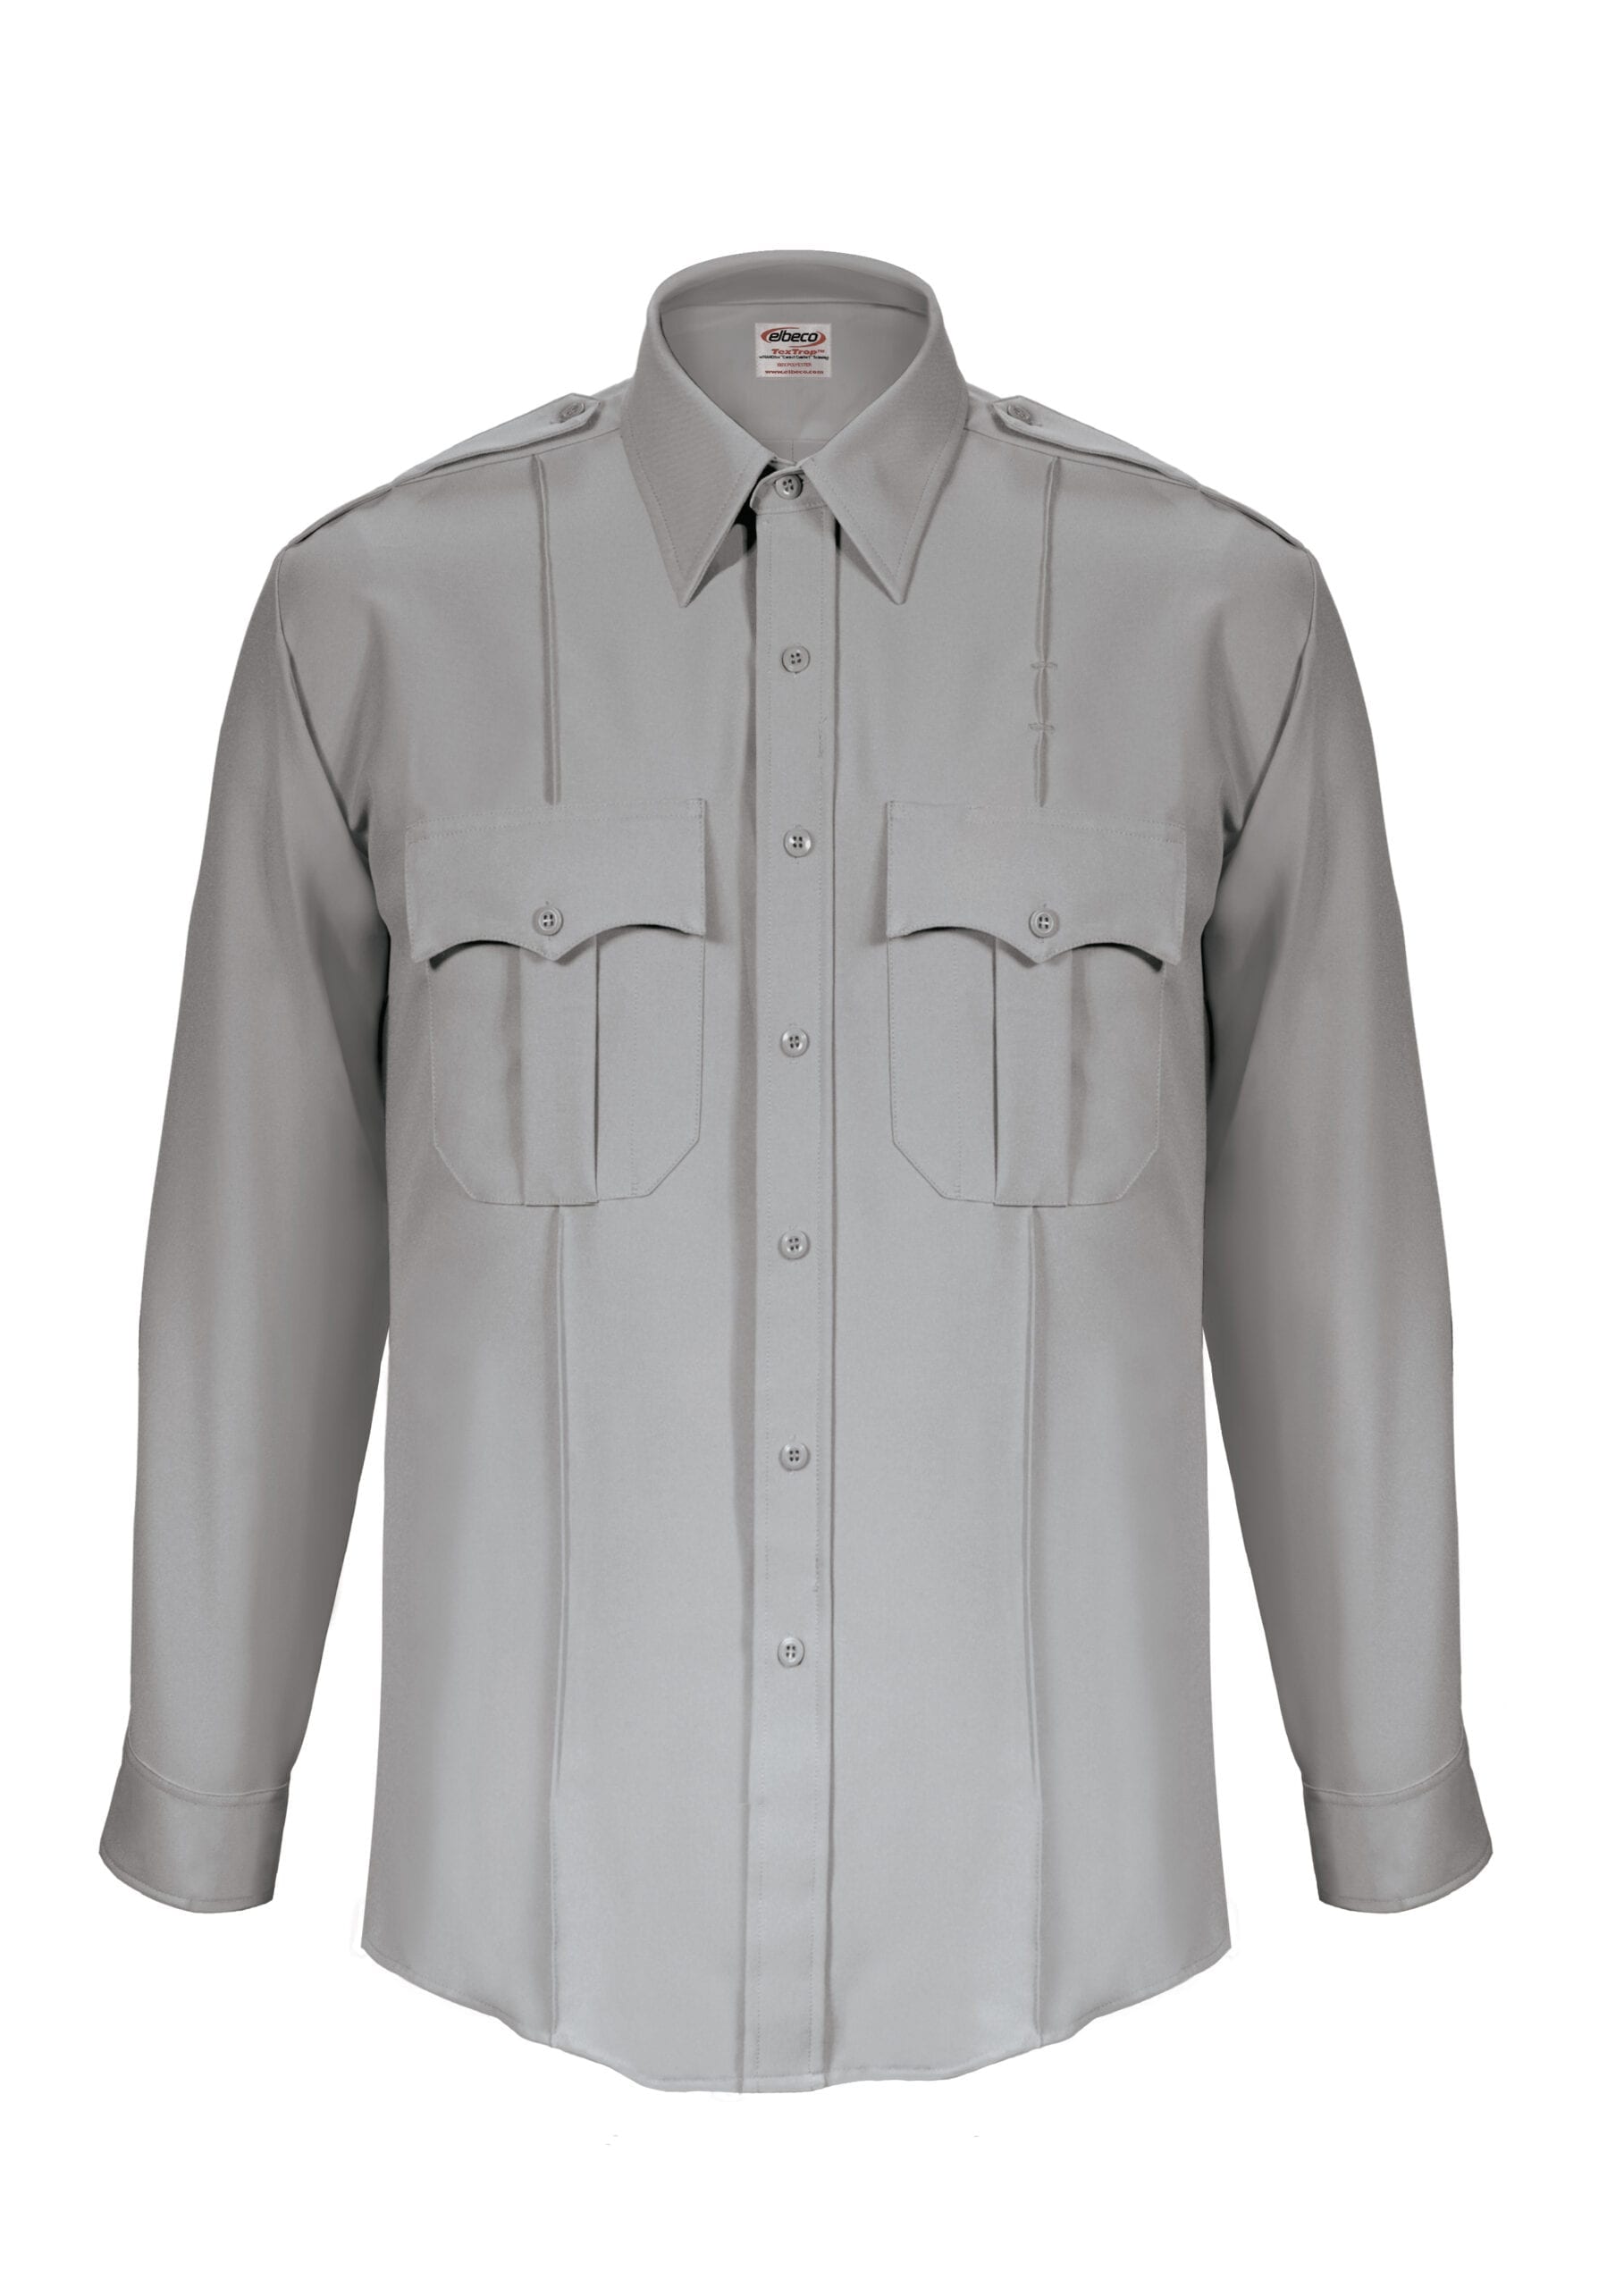 Elbeco Mens Textrop2 Long Sleeve Class A Uniform Shirt, Grey - COPS ...